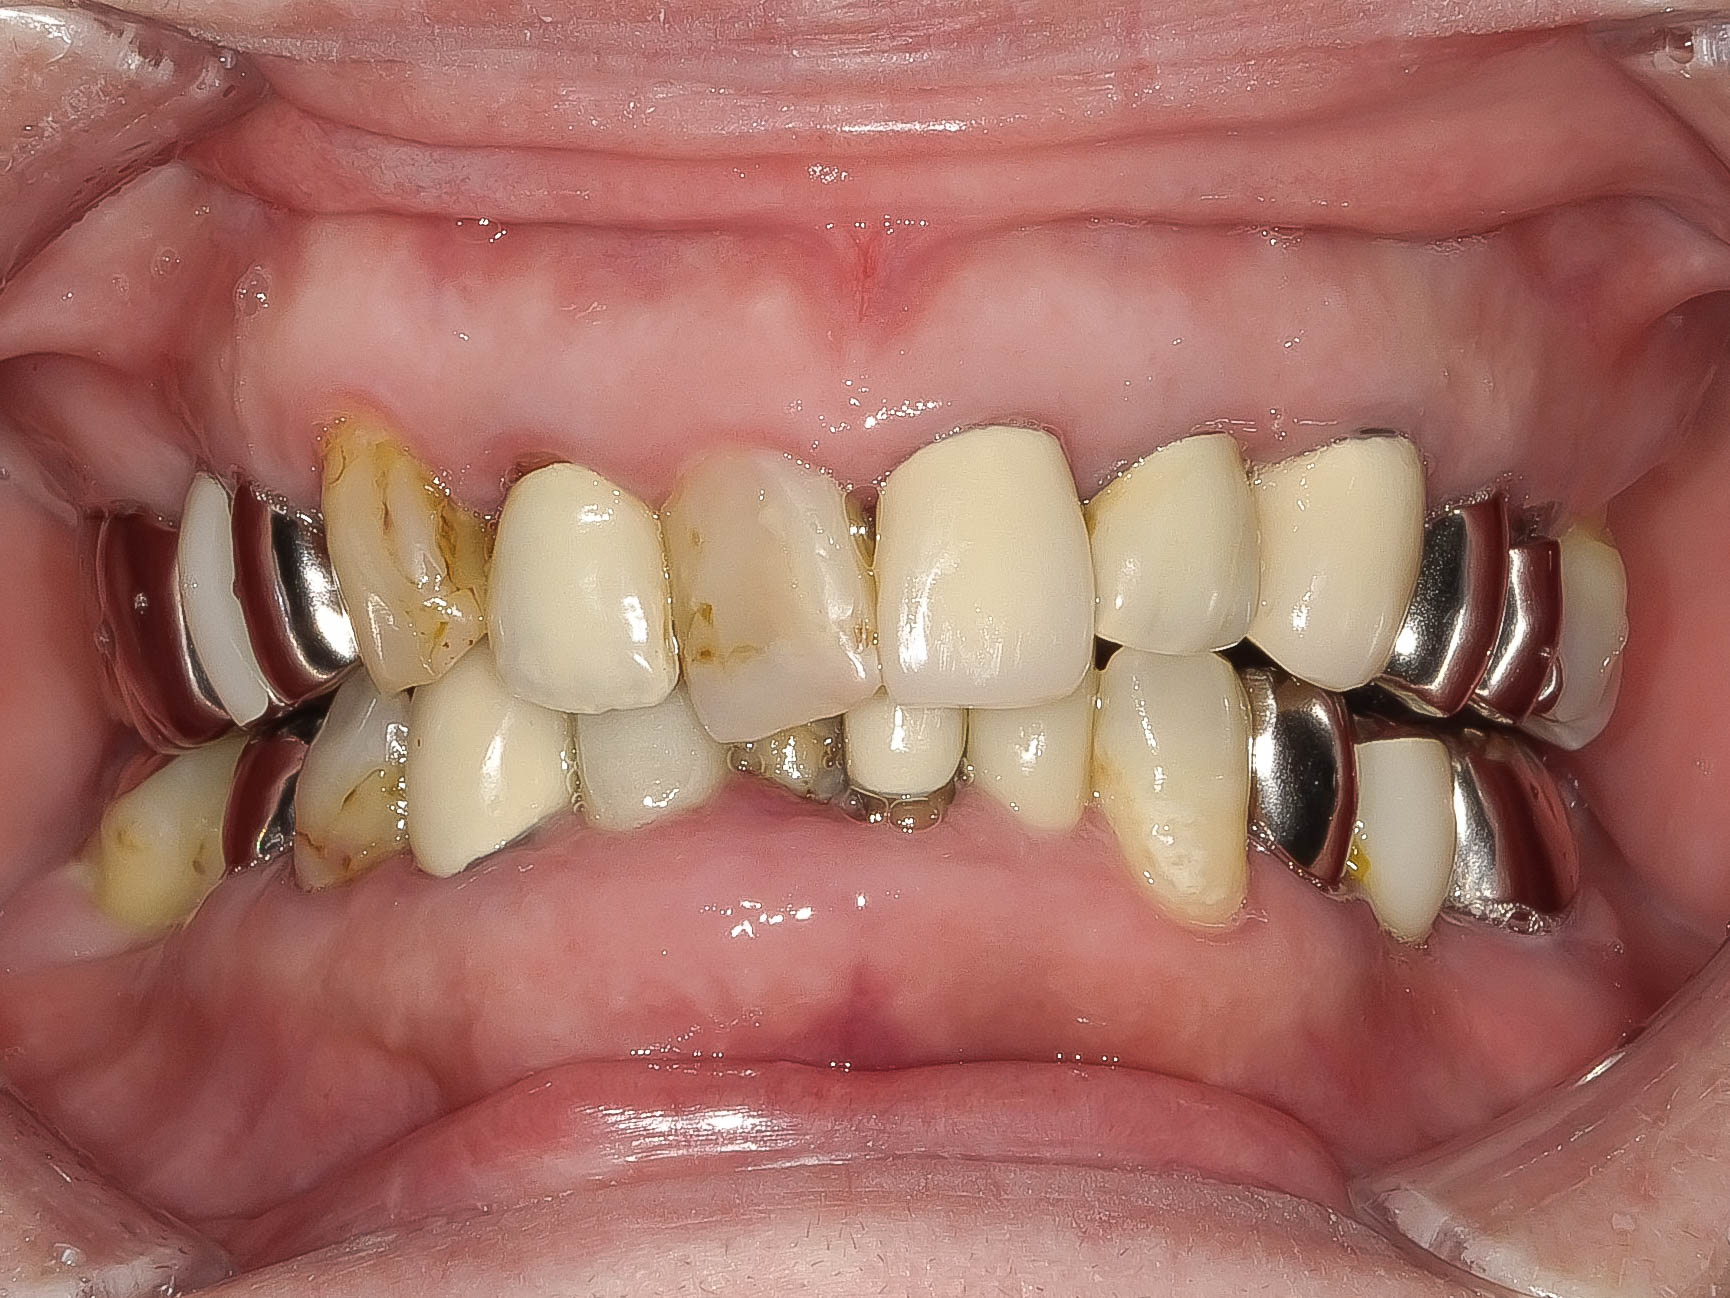 精密根管治療にて抜歯を回避した症例 3治療方法18